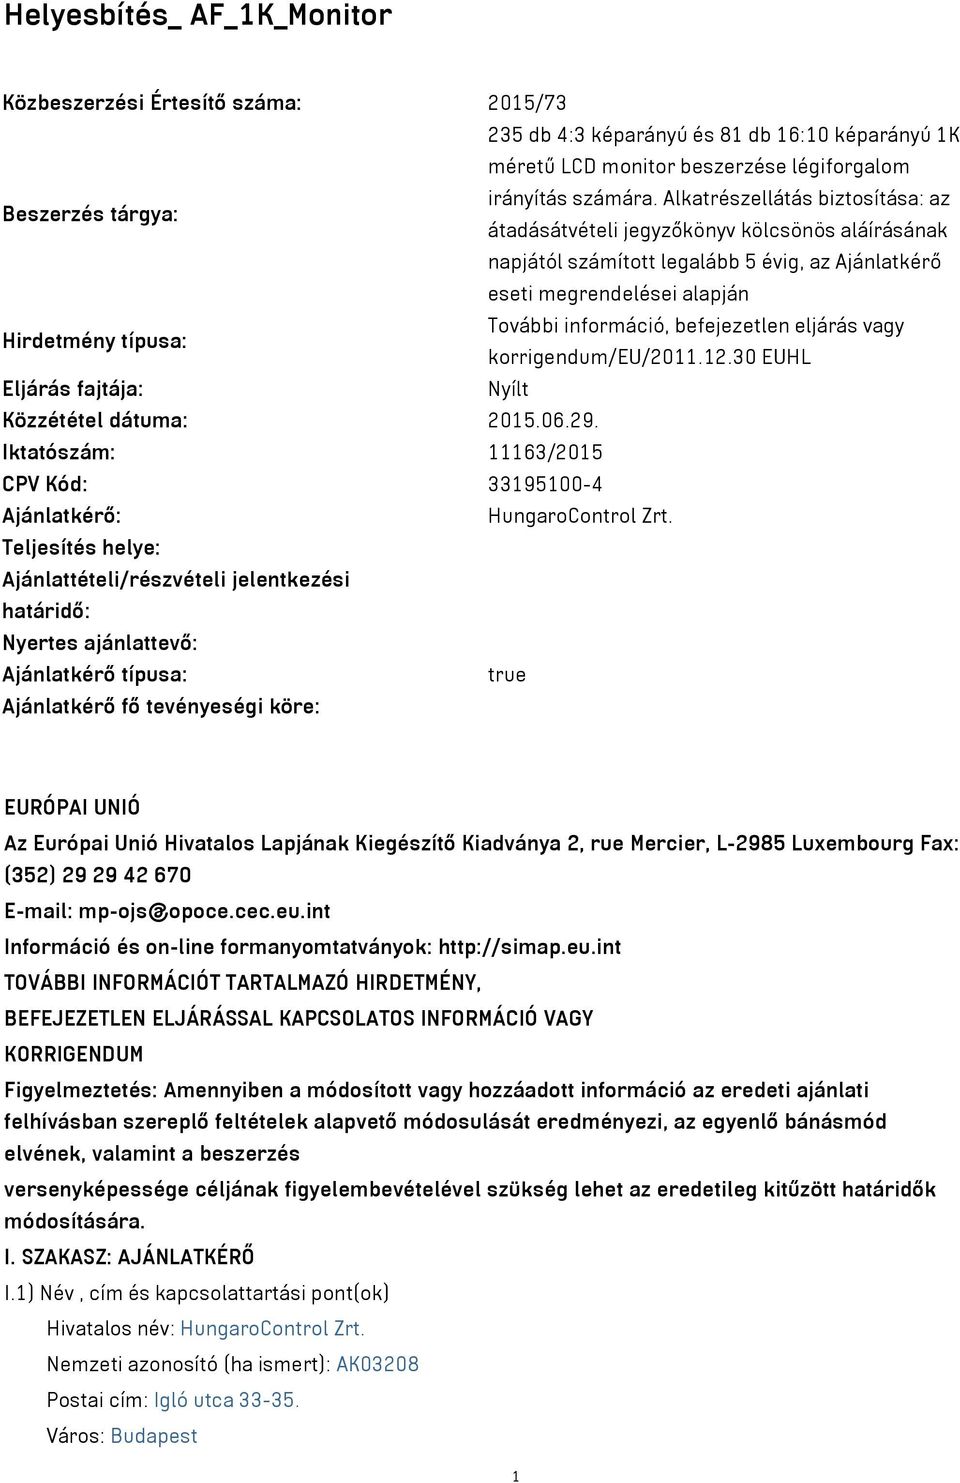 befejezetlen eljárás vagy Hirdetmény típusa: korrigendum/eu/2011.12.30 EUHL Eljárás fajtája: Nyílt Közzététel dátuma: 2015.06.29.